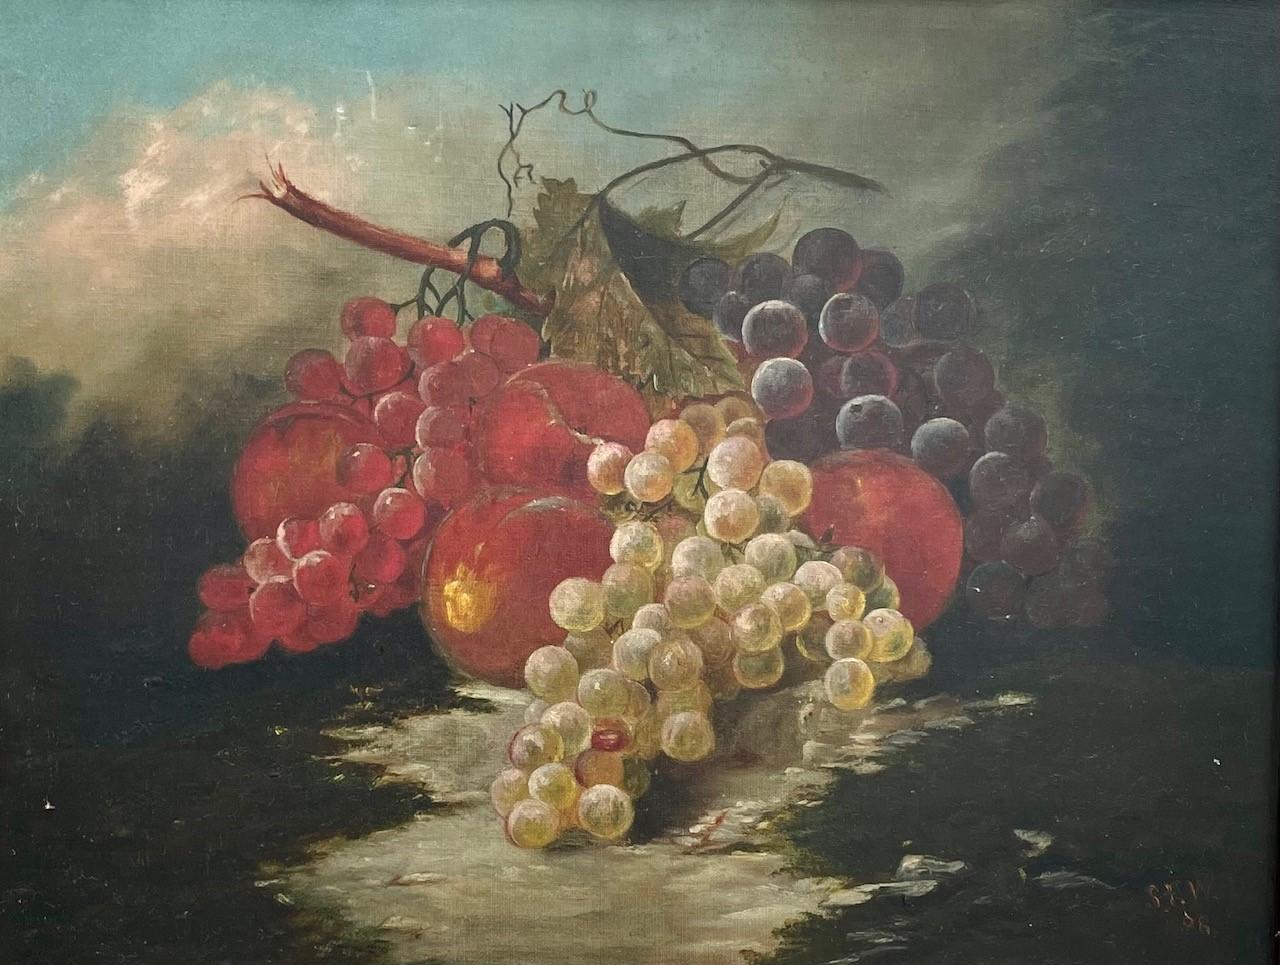 Peinture à l'huile américaine du 19ème siècle, nature morte avec fruits et raisins.

Belle peinture à l'huile, magistralement exécutée, représentant des raisins et des fruits sur fond de ciel bleu. Cet ouvrage porte le monogramme et la date de '88